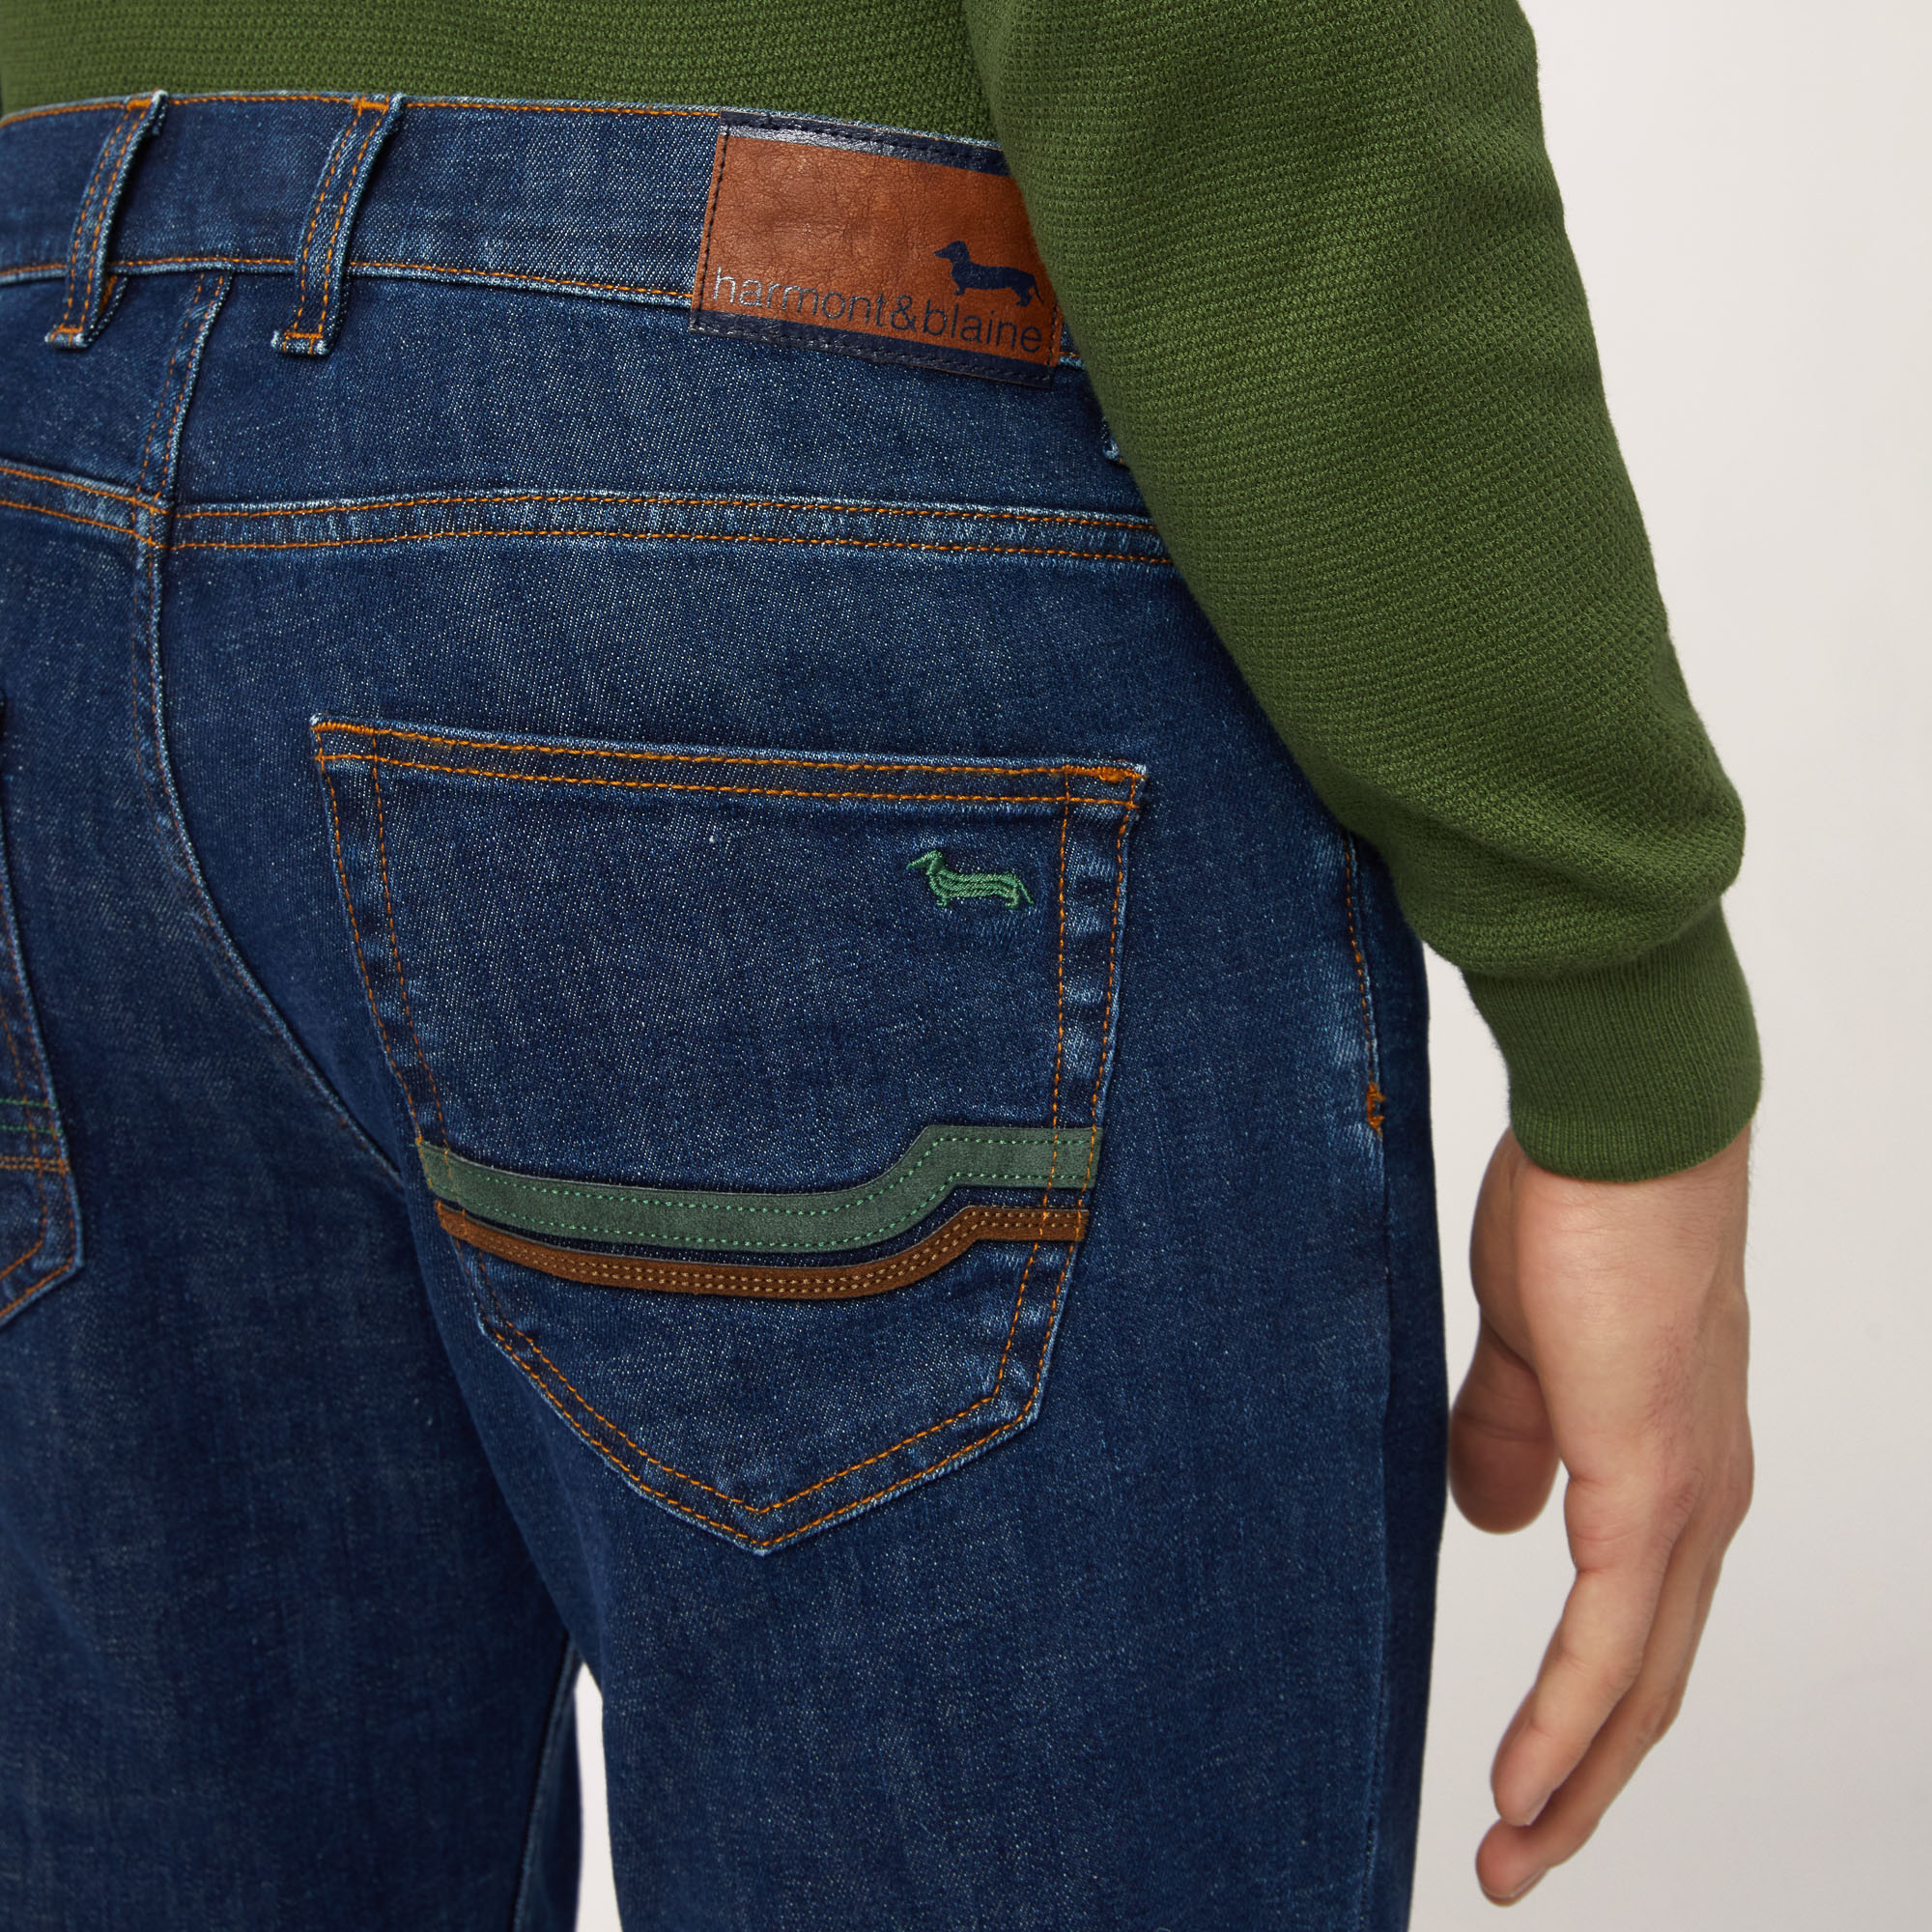 Pantalón de 5 bolsillos con aplicaciones, Verde oscuro, large image number 2